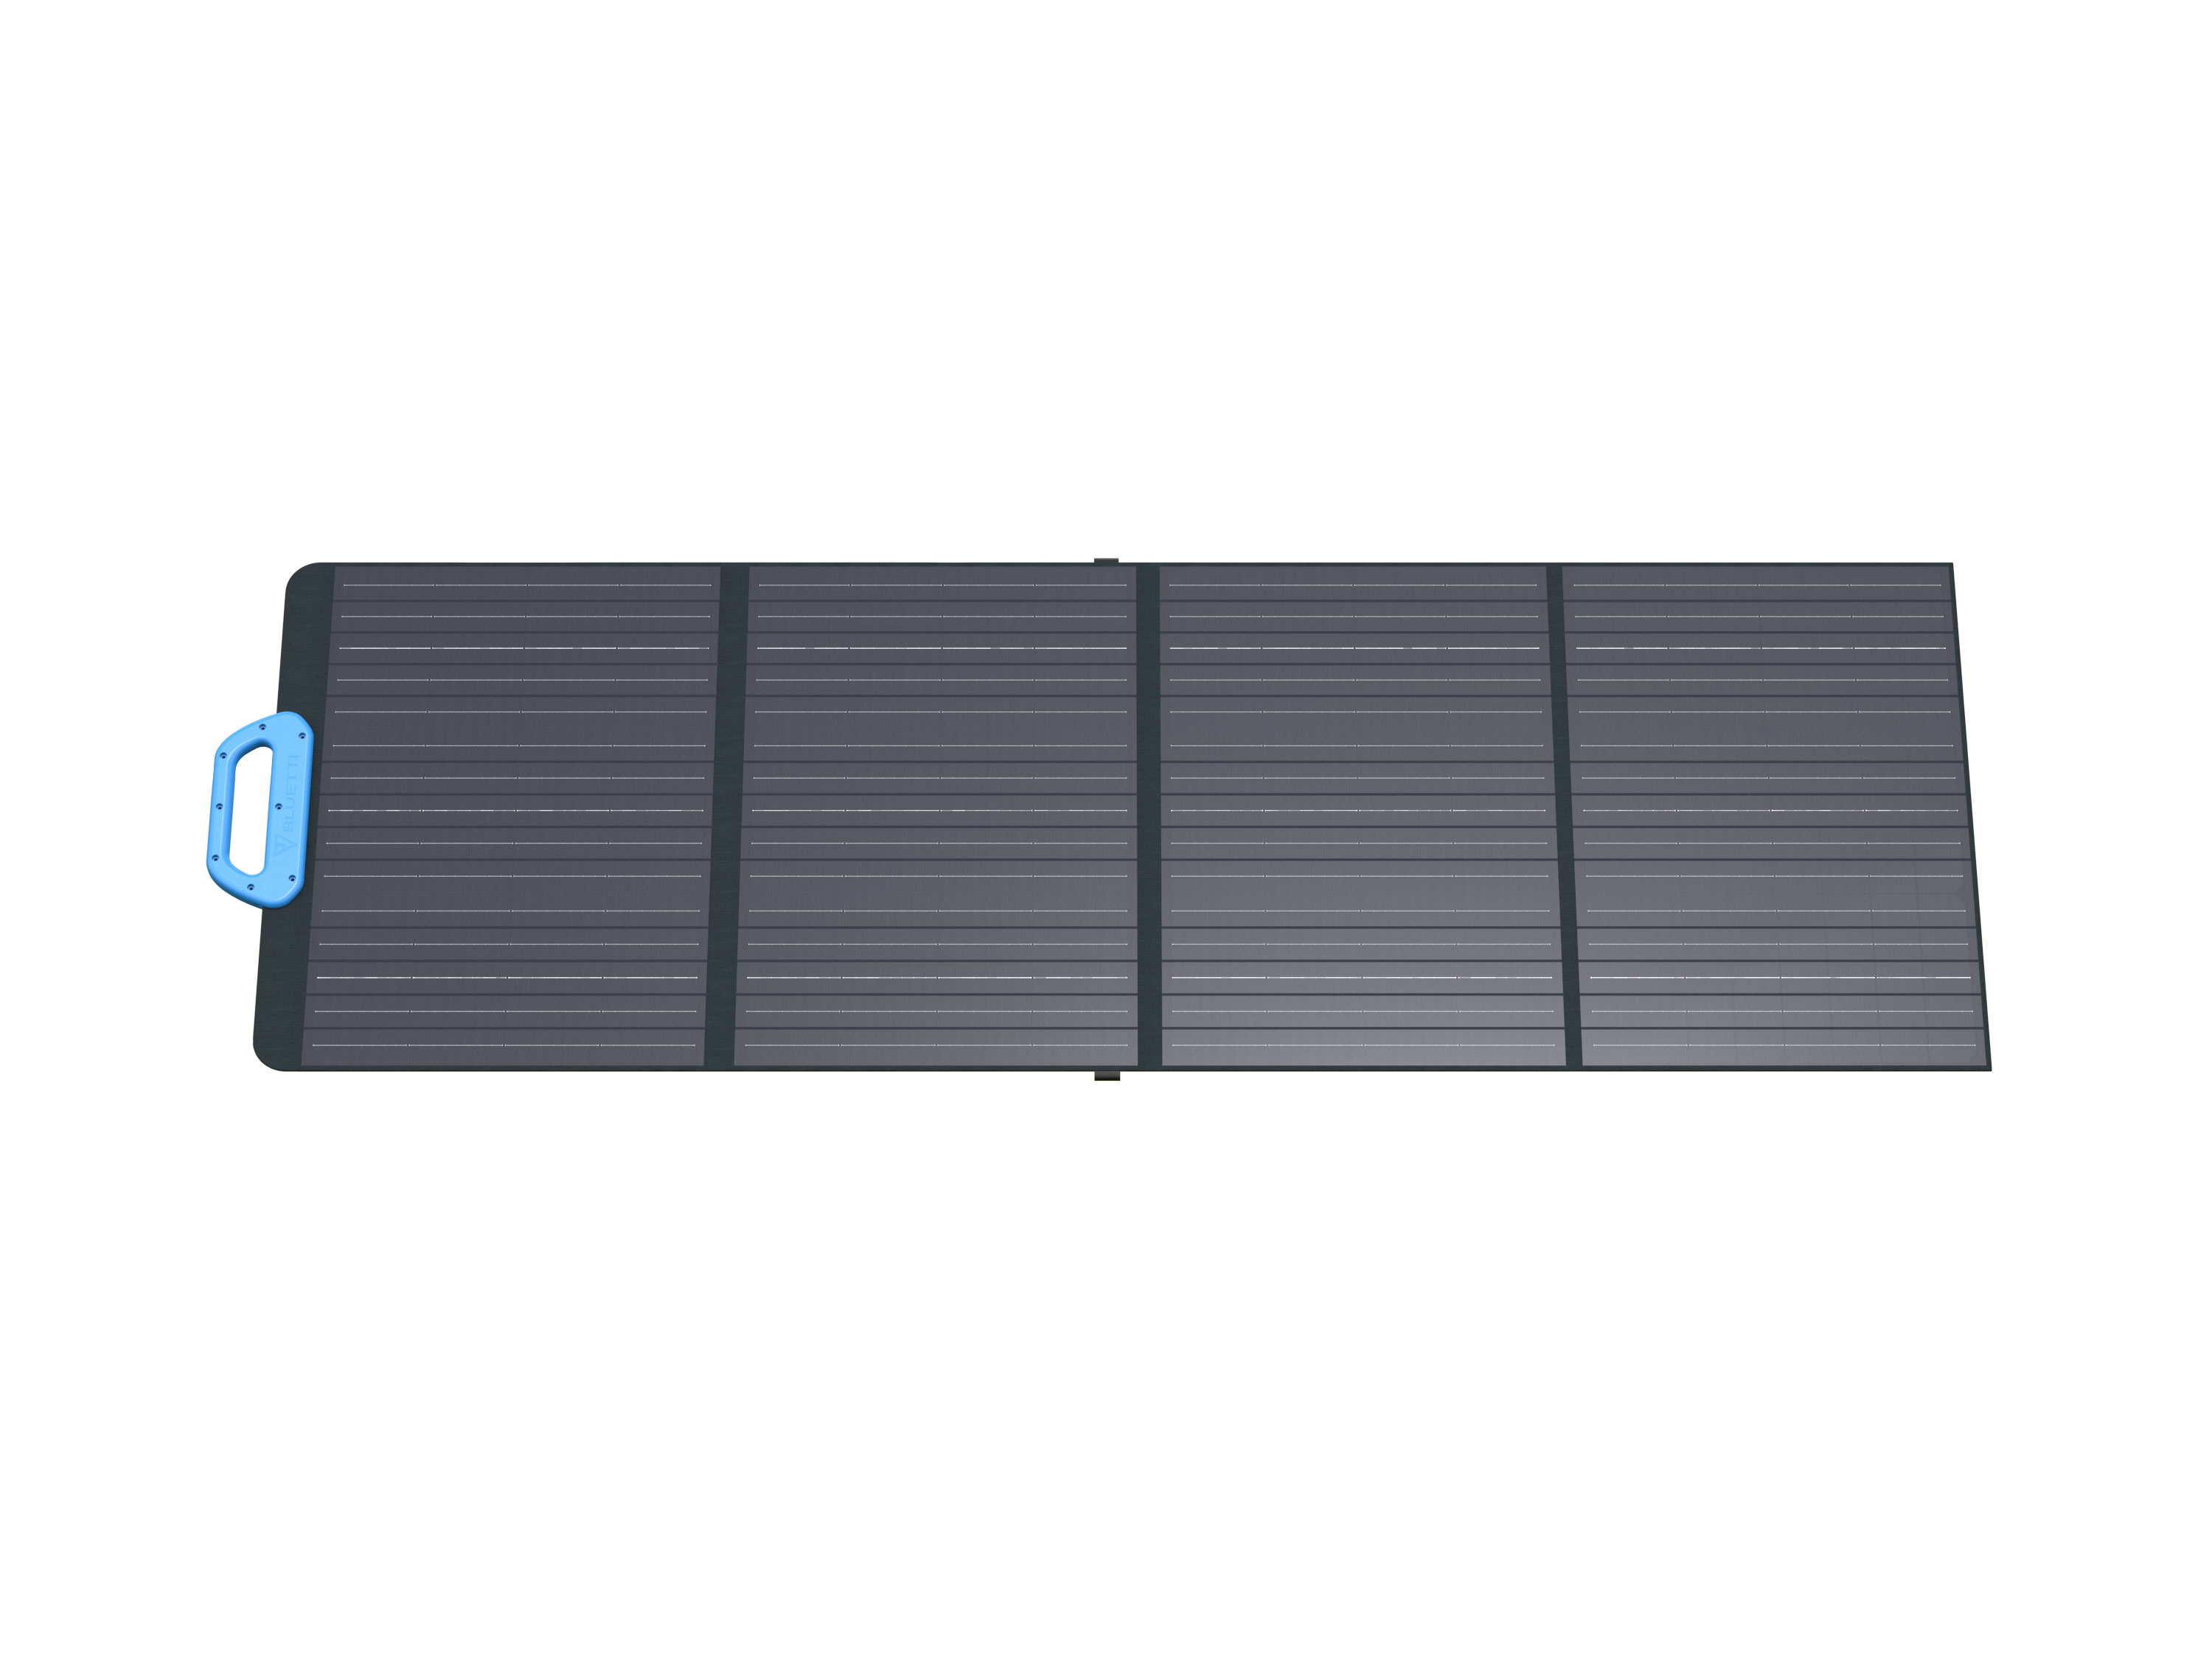 Bluetti PV120 Solar Panel 120W faltbares Solarmodul